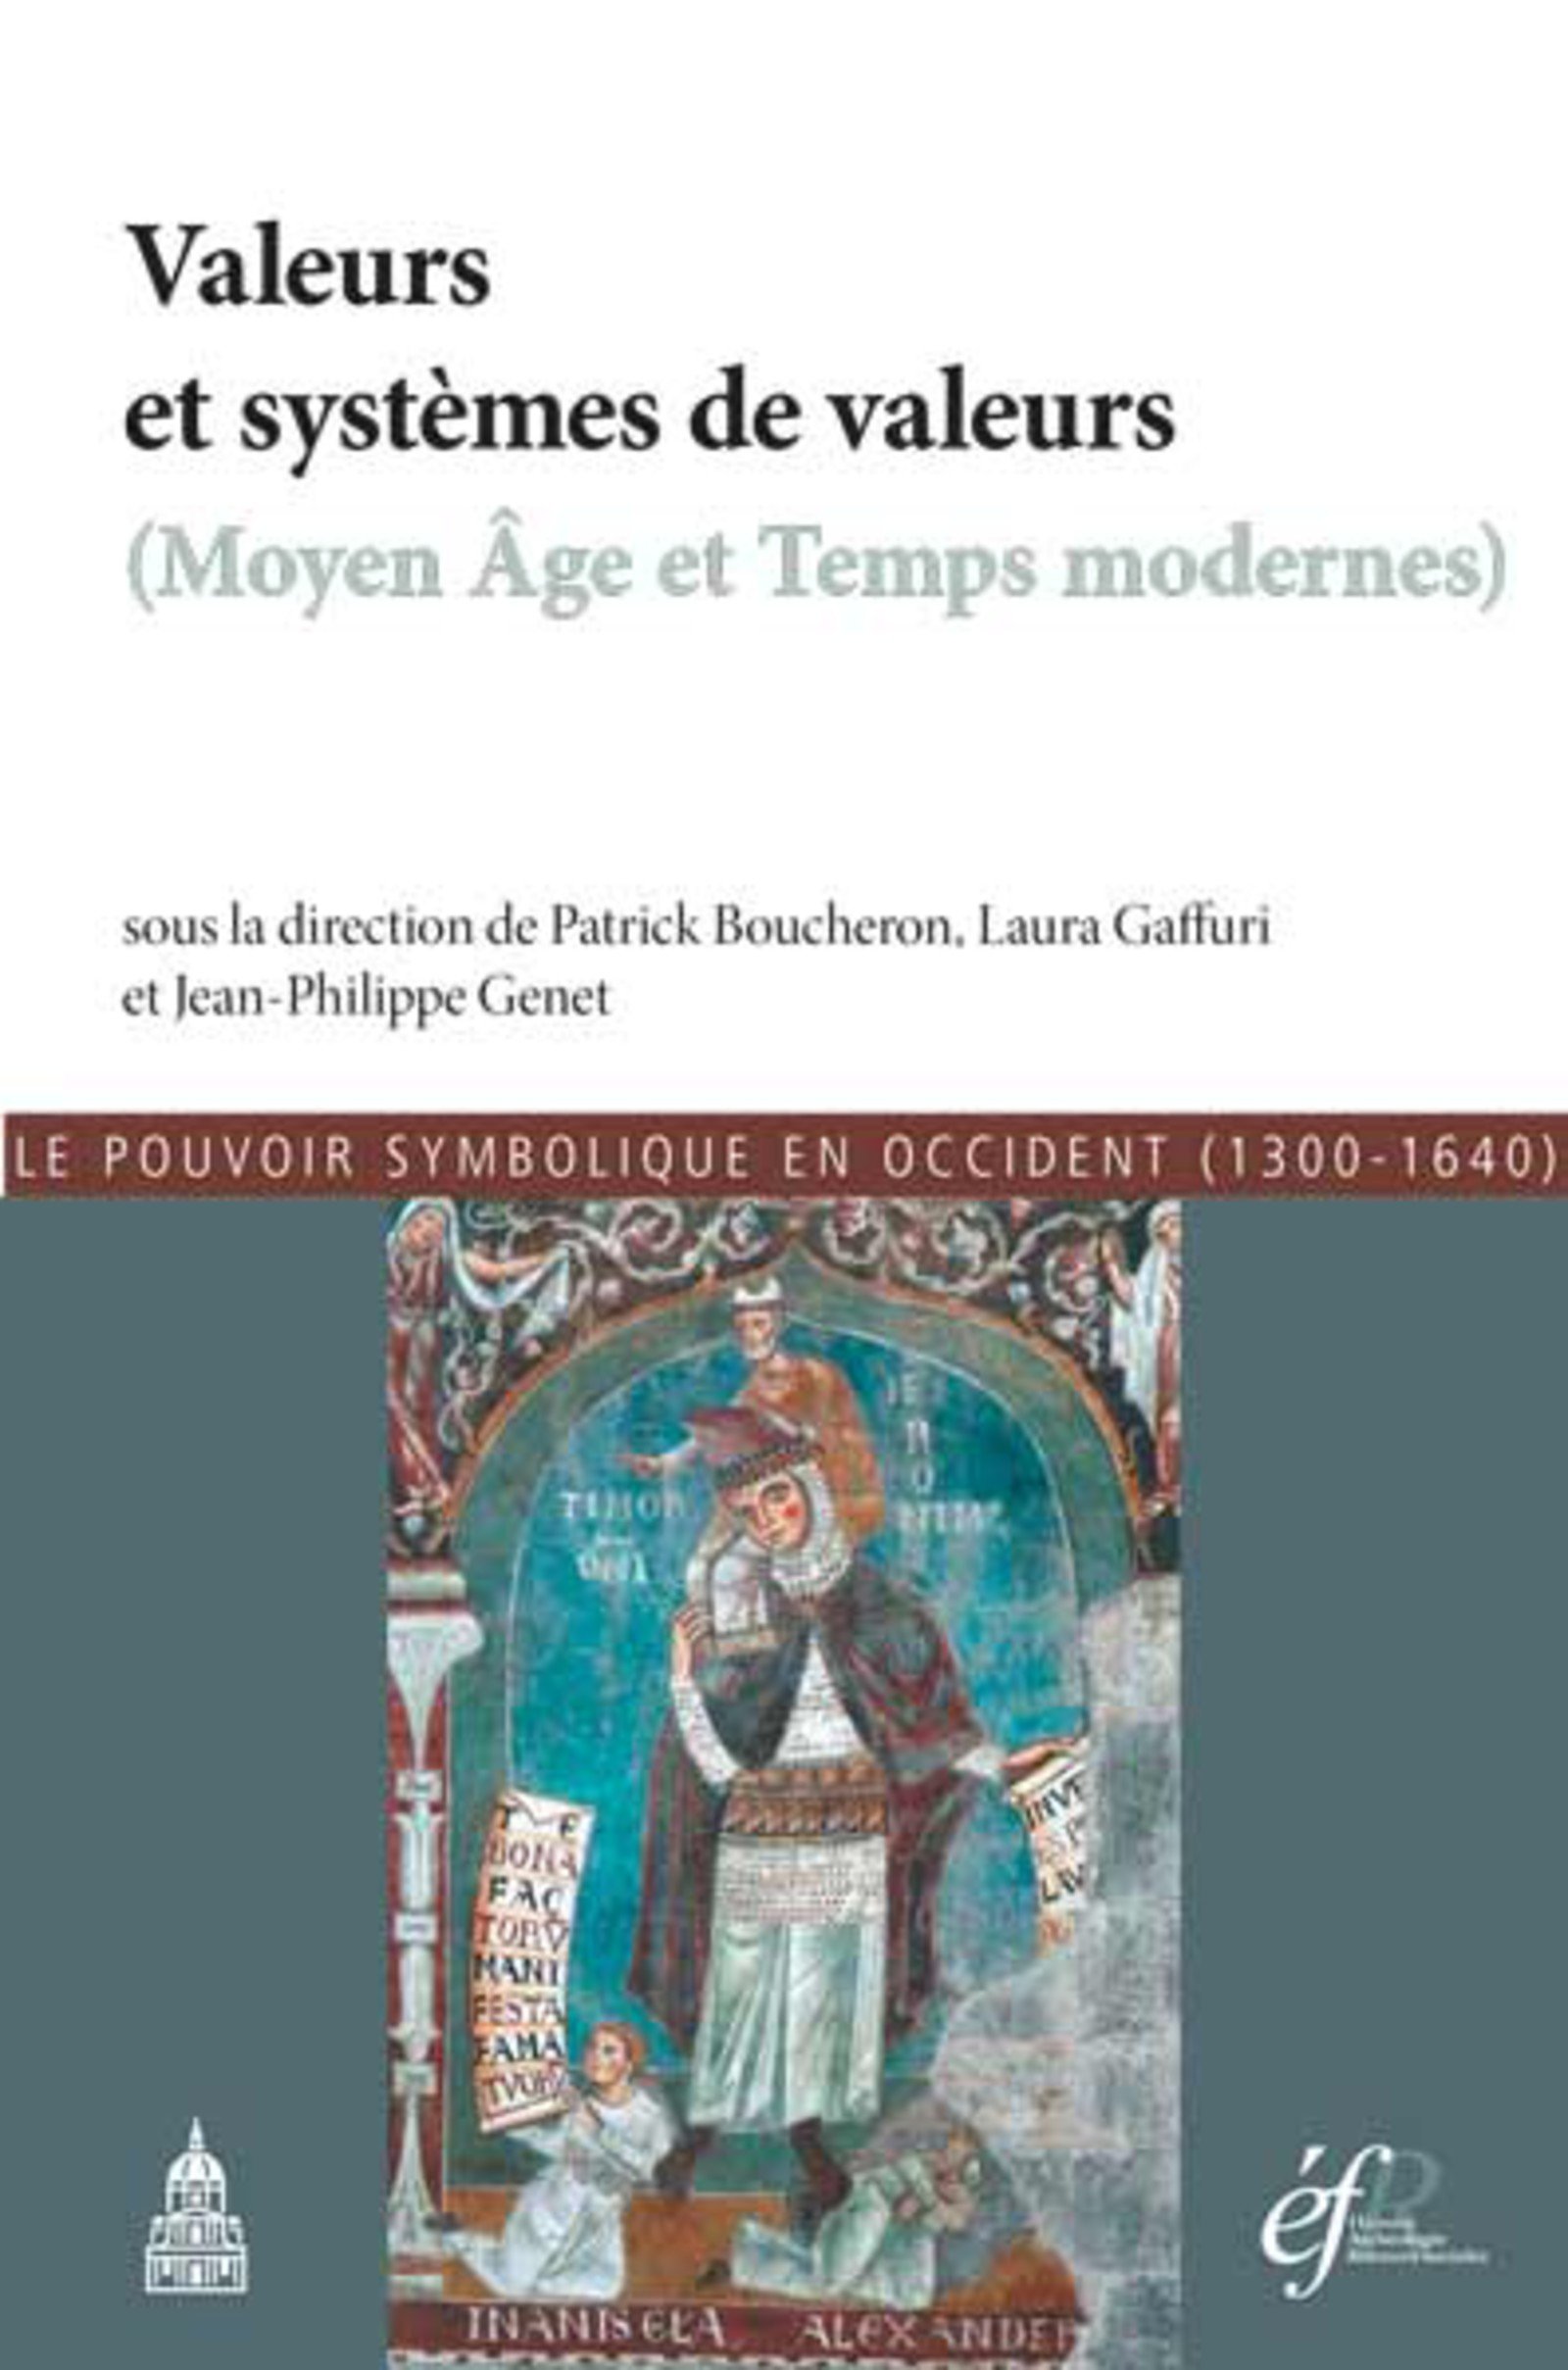 Valeurs et systèmes de valeurs (Moyen Age et Temps modernes). Le pouvoir symbolique en Occident (1300-1640), 2017, 354 p.